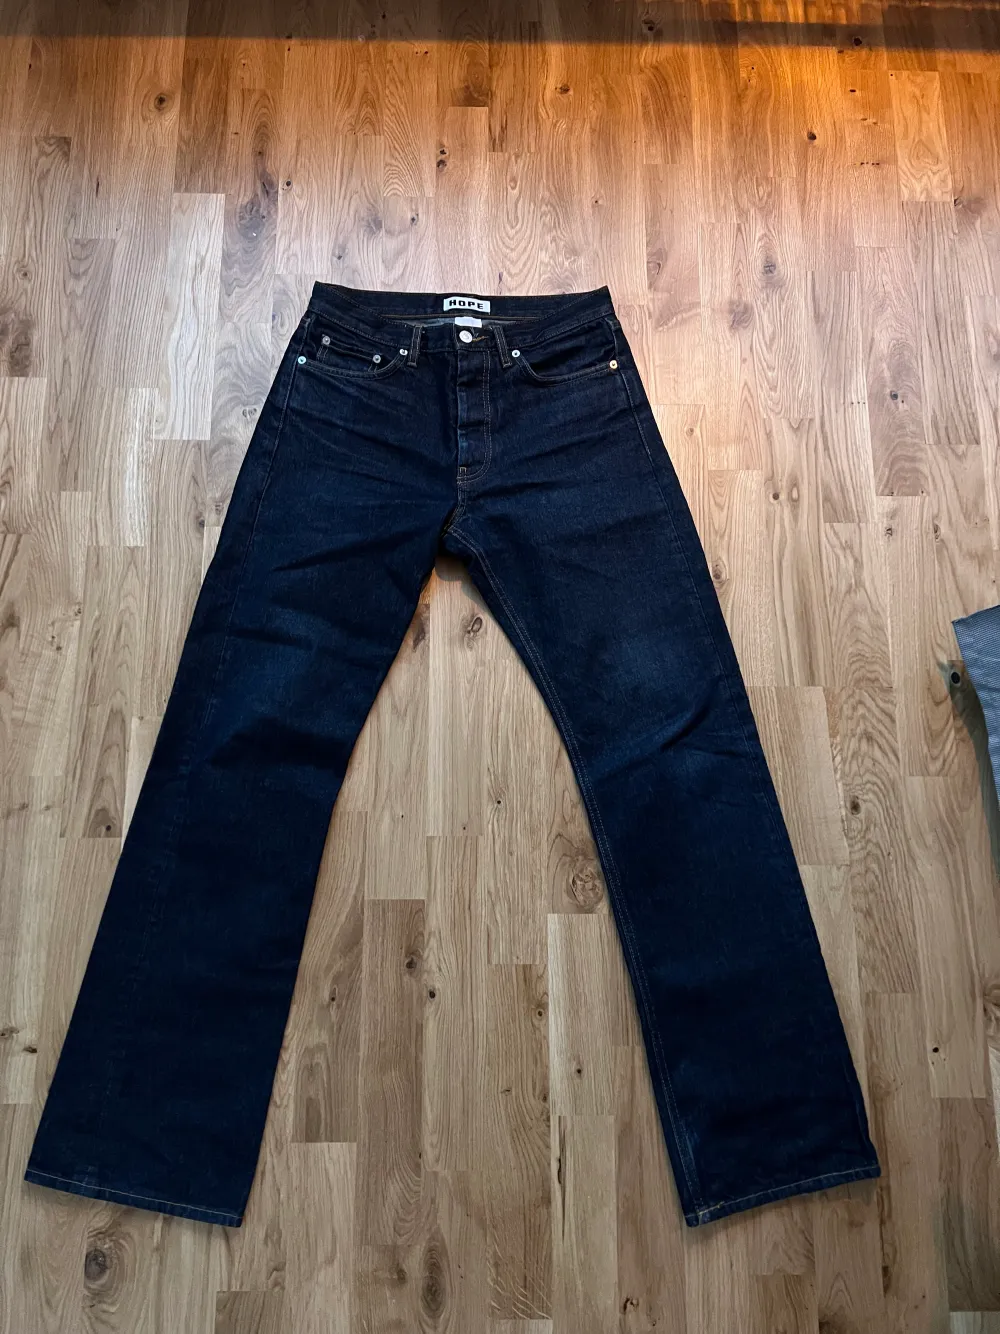 Mörkblåa hope rush jeans i fint skick Storlek 27 Finns fläck på baksida (bild 3) kan eventuellt gå bort i tvätt Skriv ifall ni undrar något!. Jeans & Byxor.